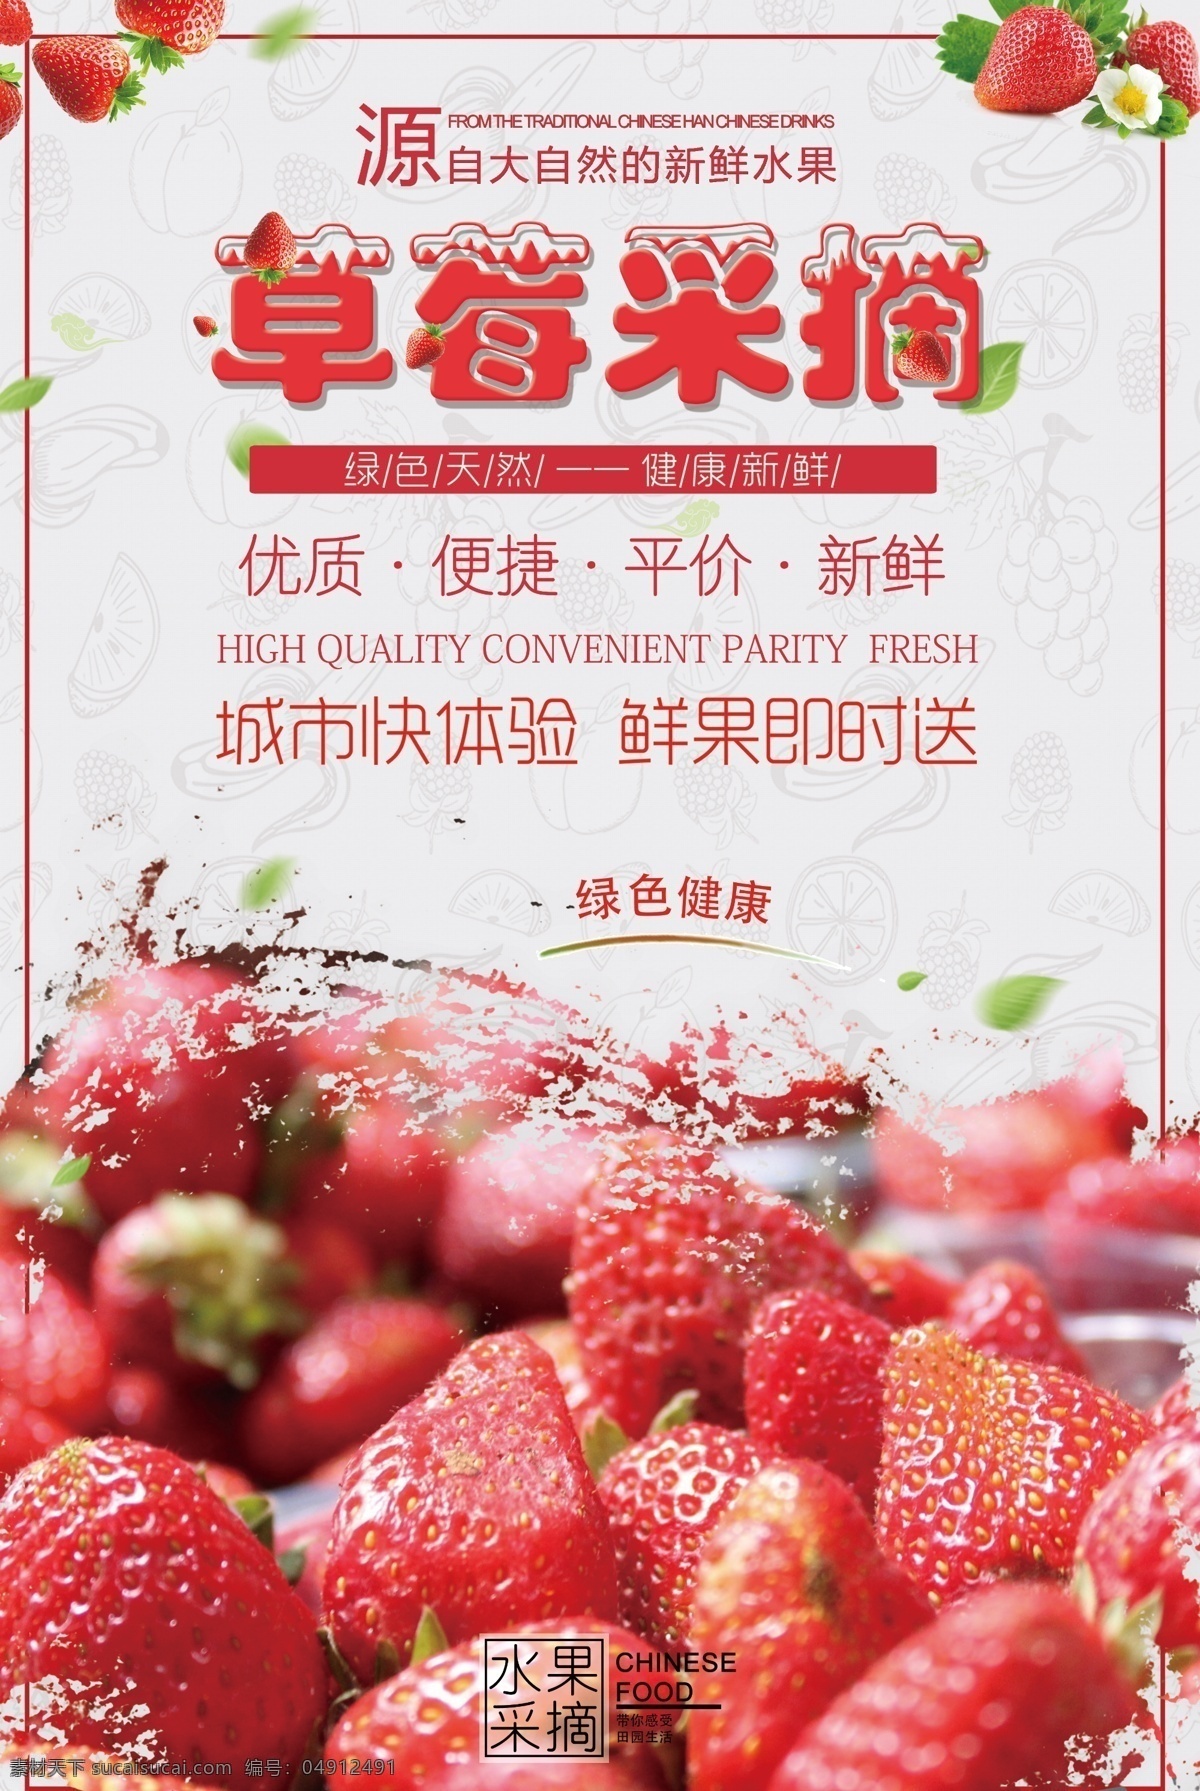 红色 新鲜 草莓 海报 水果海报 新鲜水果 夏日 夏季 冷饮 果汁 传单 彩色 热带水果 展架 文化艺术 绘画书法